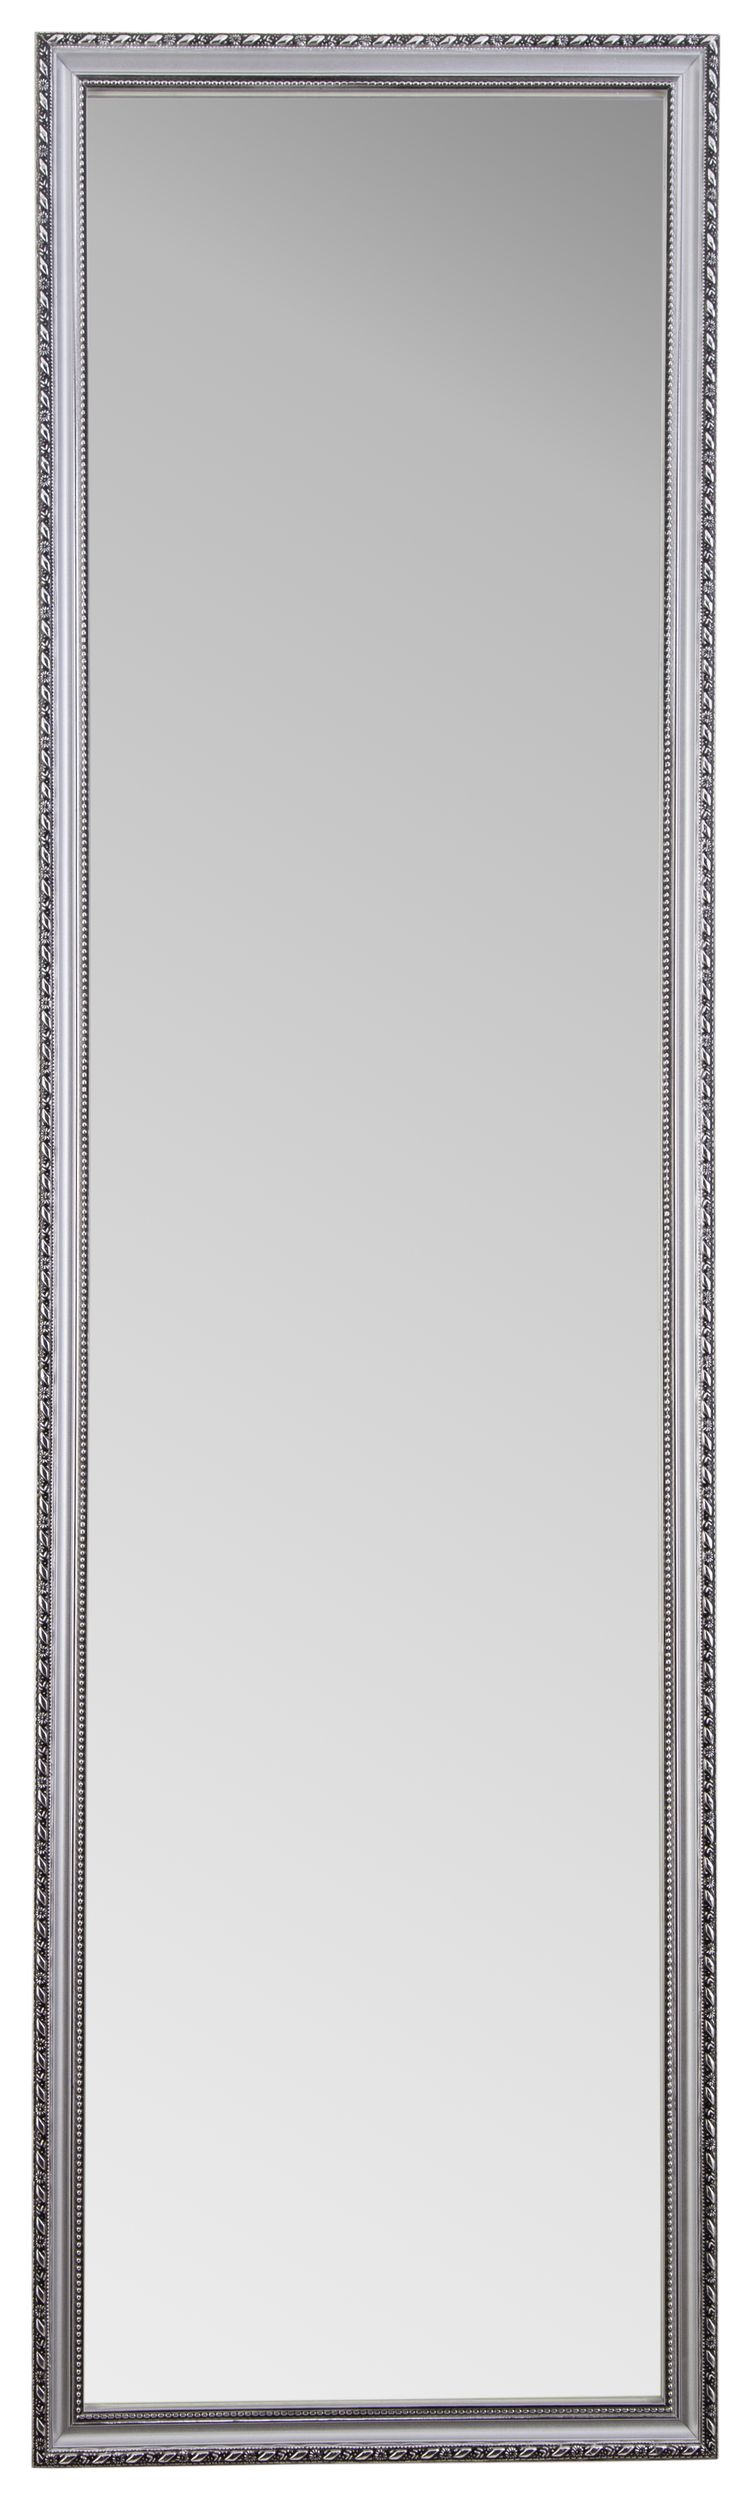 Rahmenspiegel 35x125cm  LISA